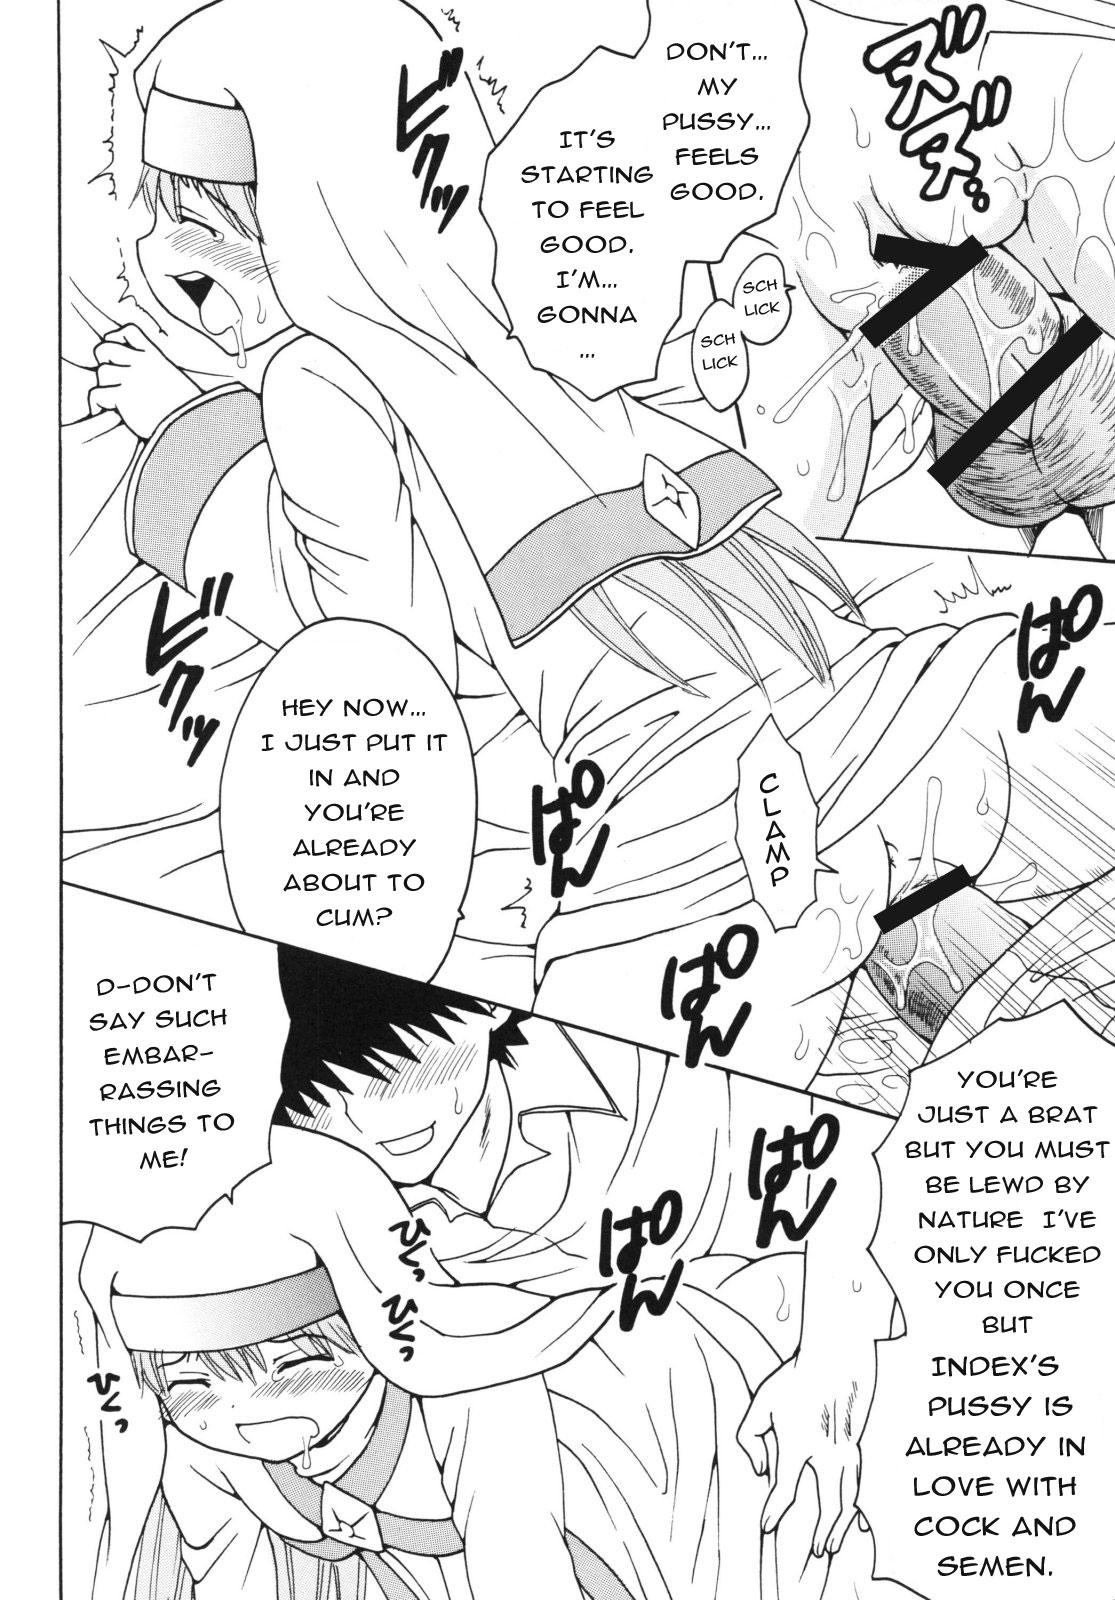 Toaru Otaku no Index #2 | A Certain Magical Lewd Index #2 43